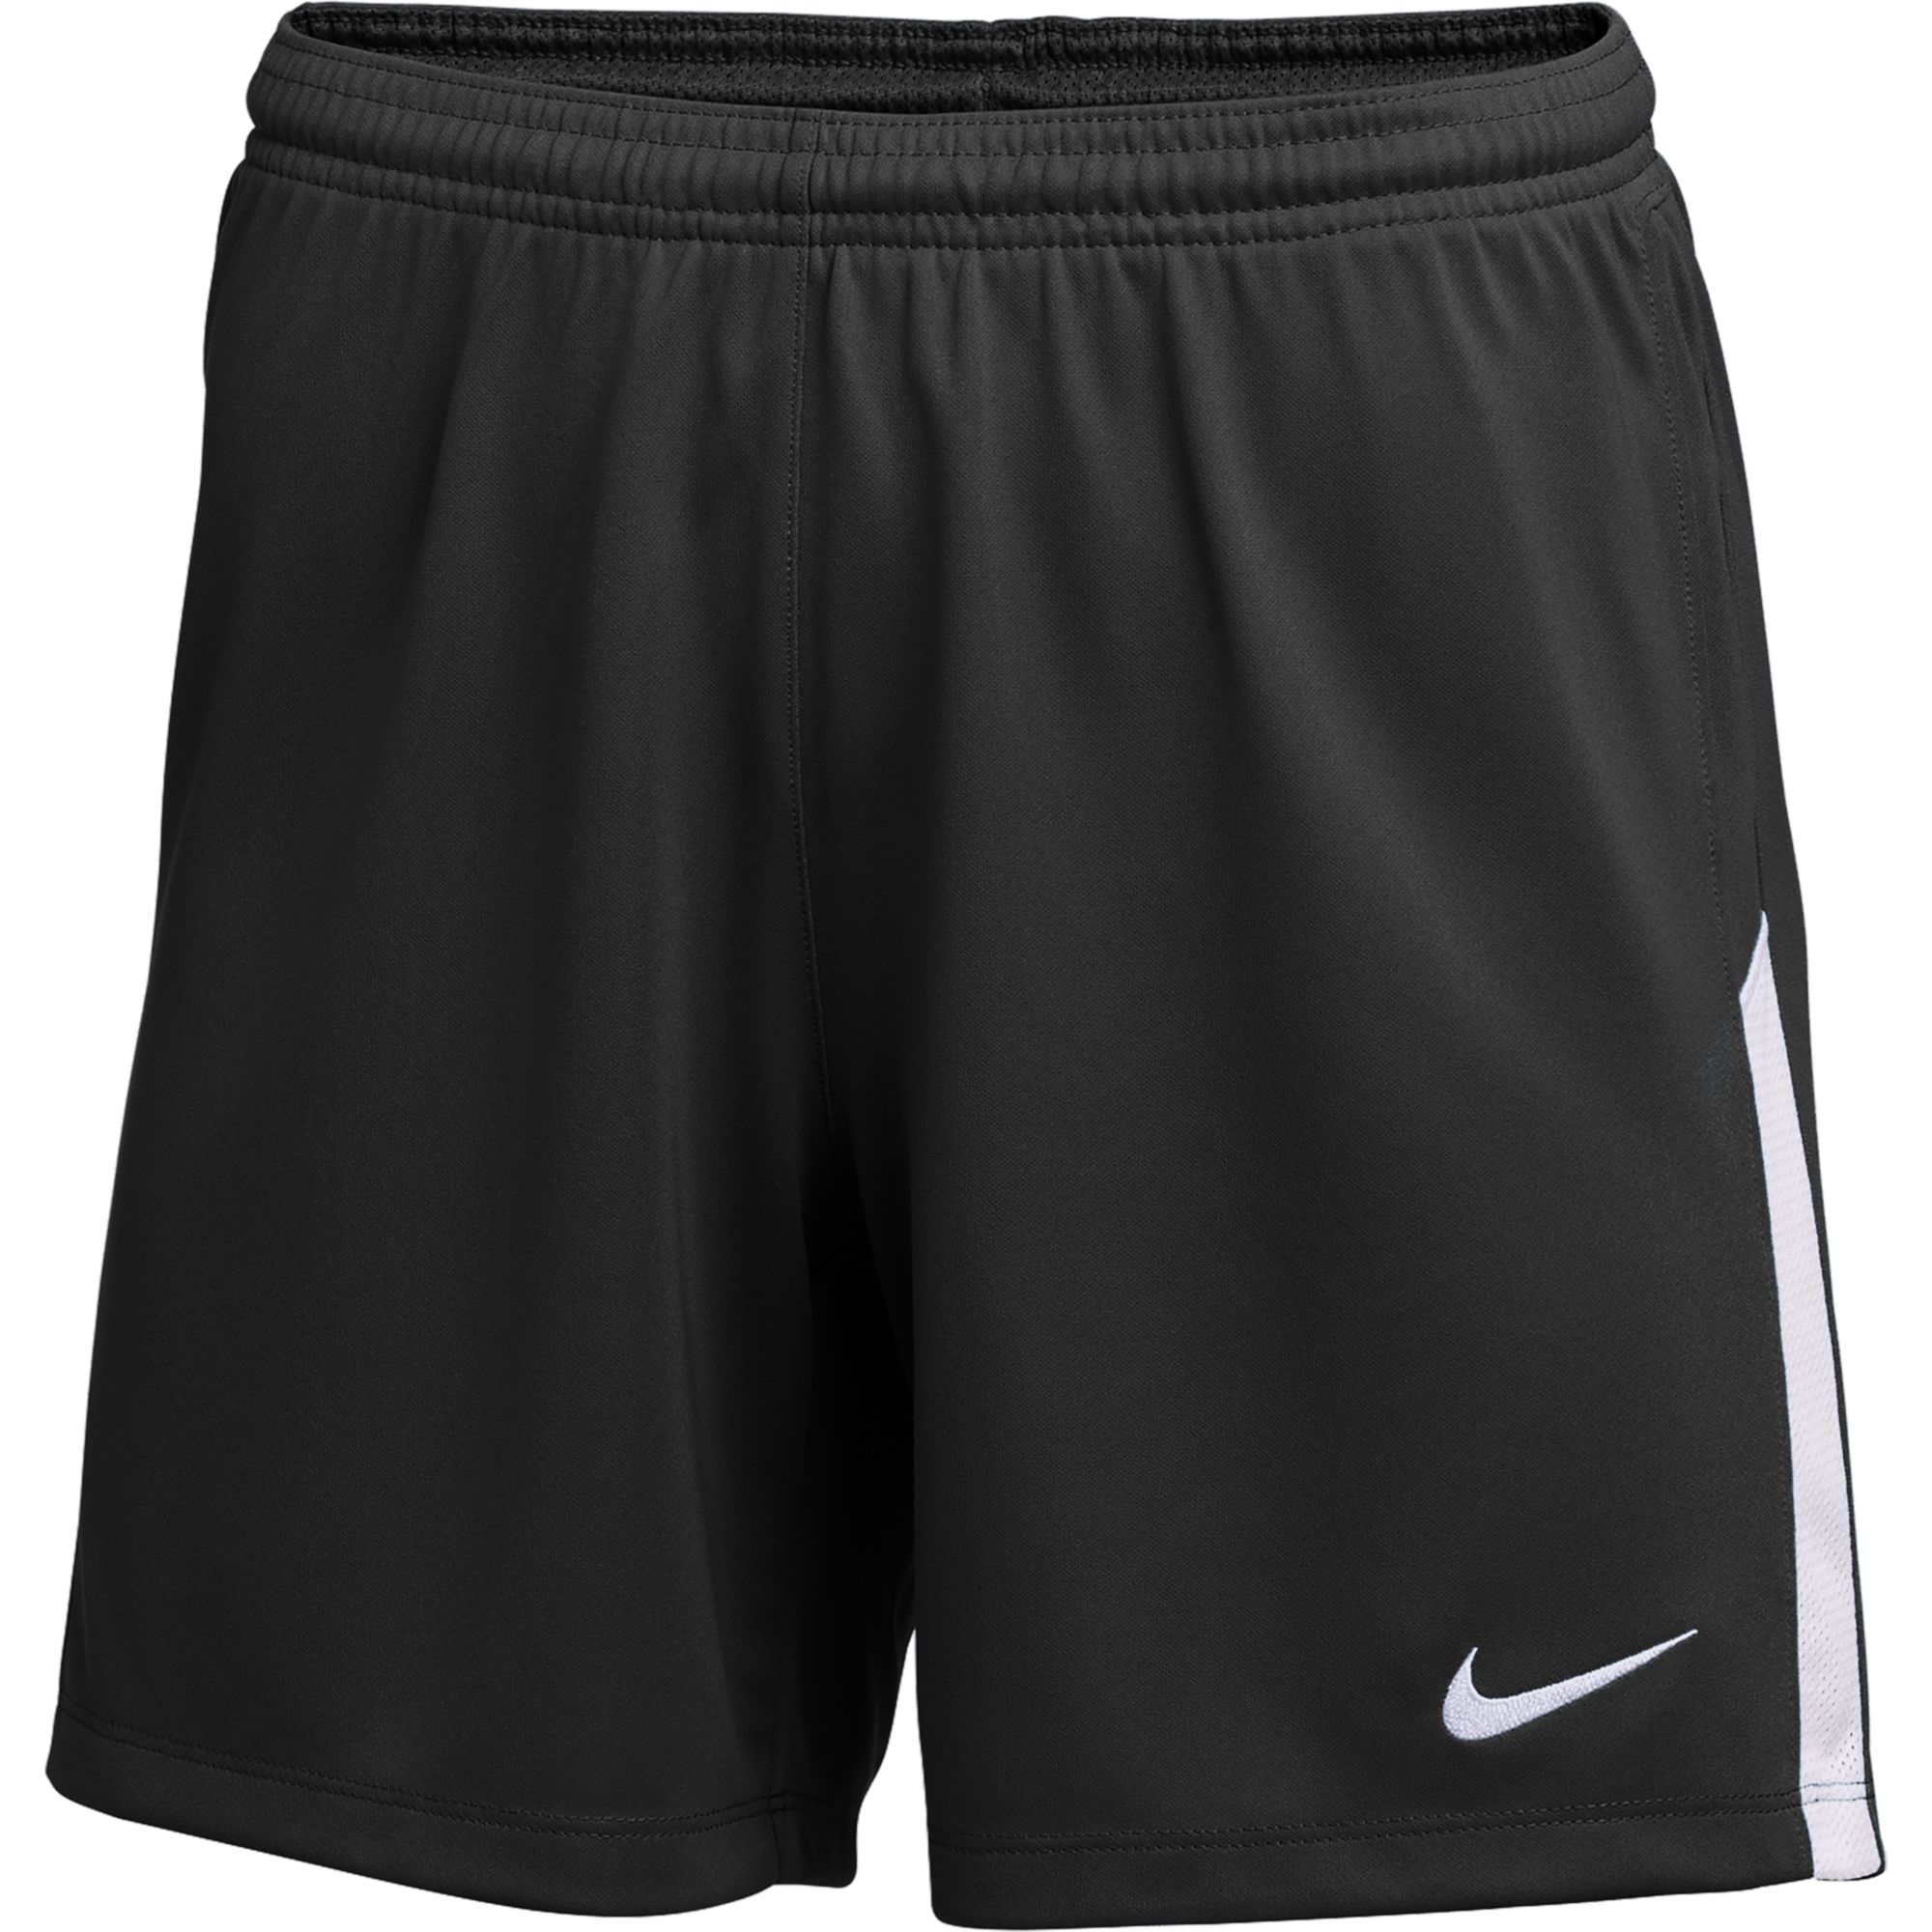 Stefans Soccer - Wisconsin - Nike Women's Dri-FIT Knit II Soccer Shorts Black / White